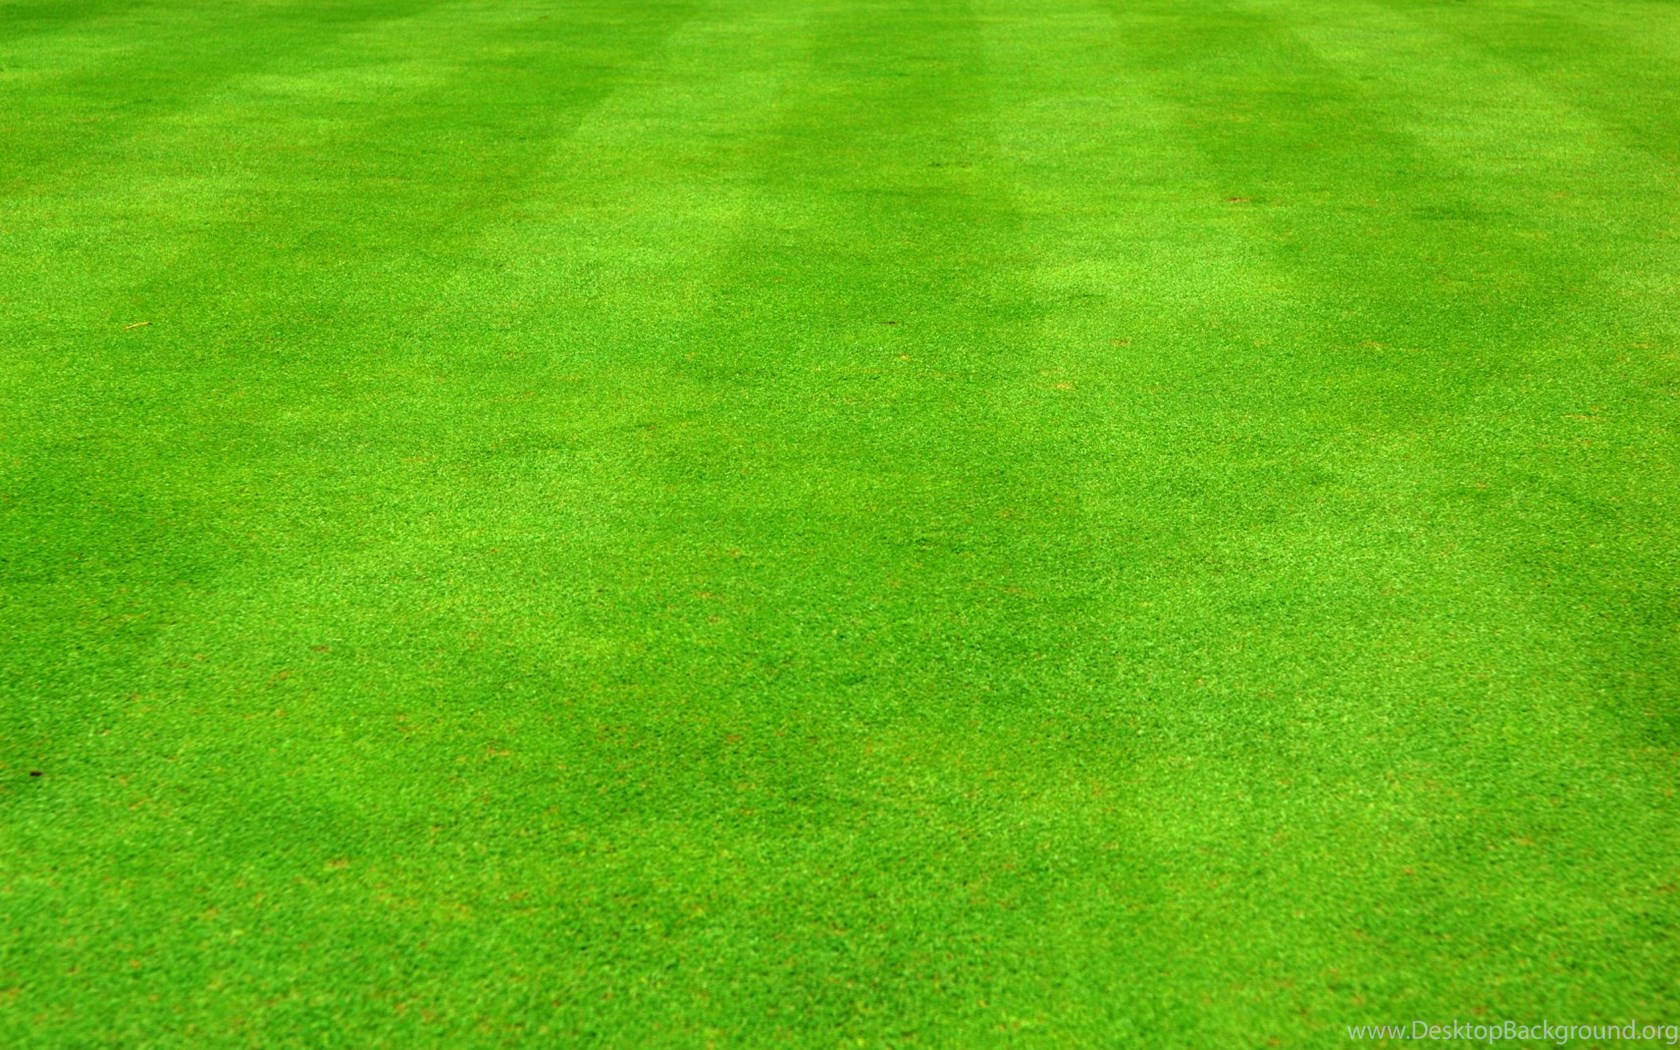 Football field grass texture